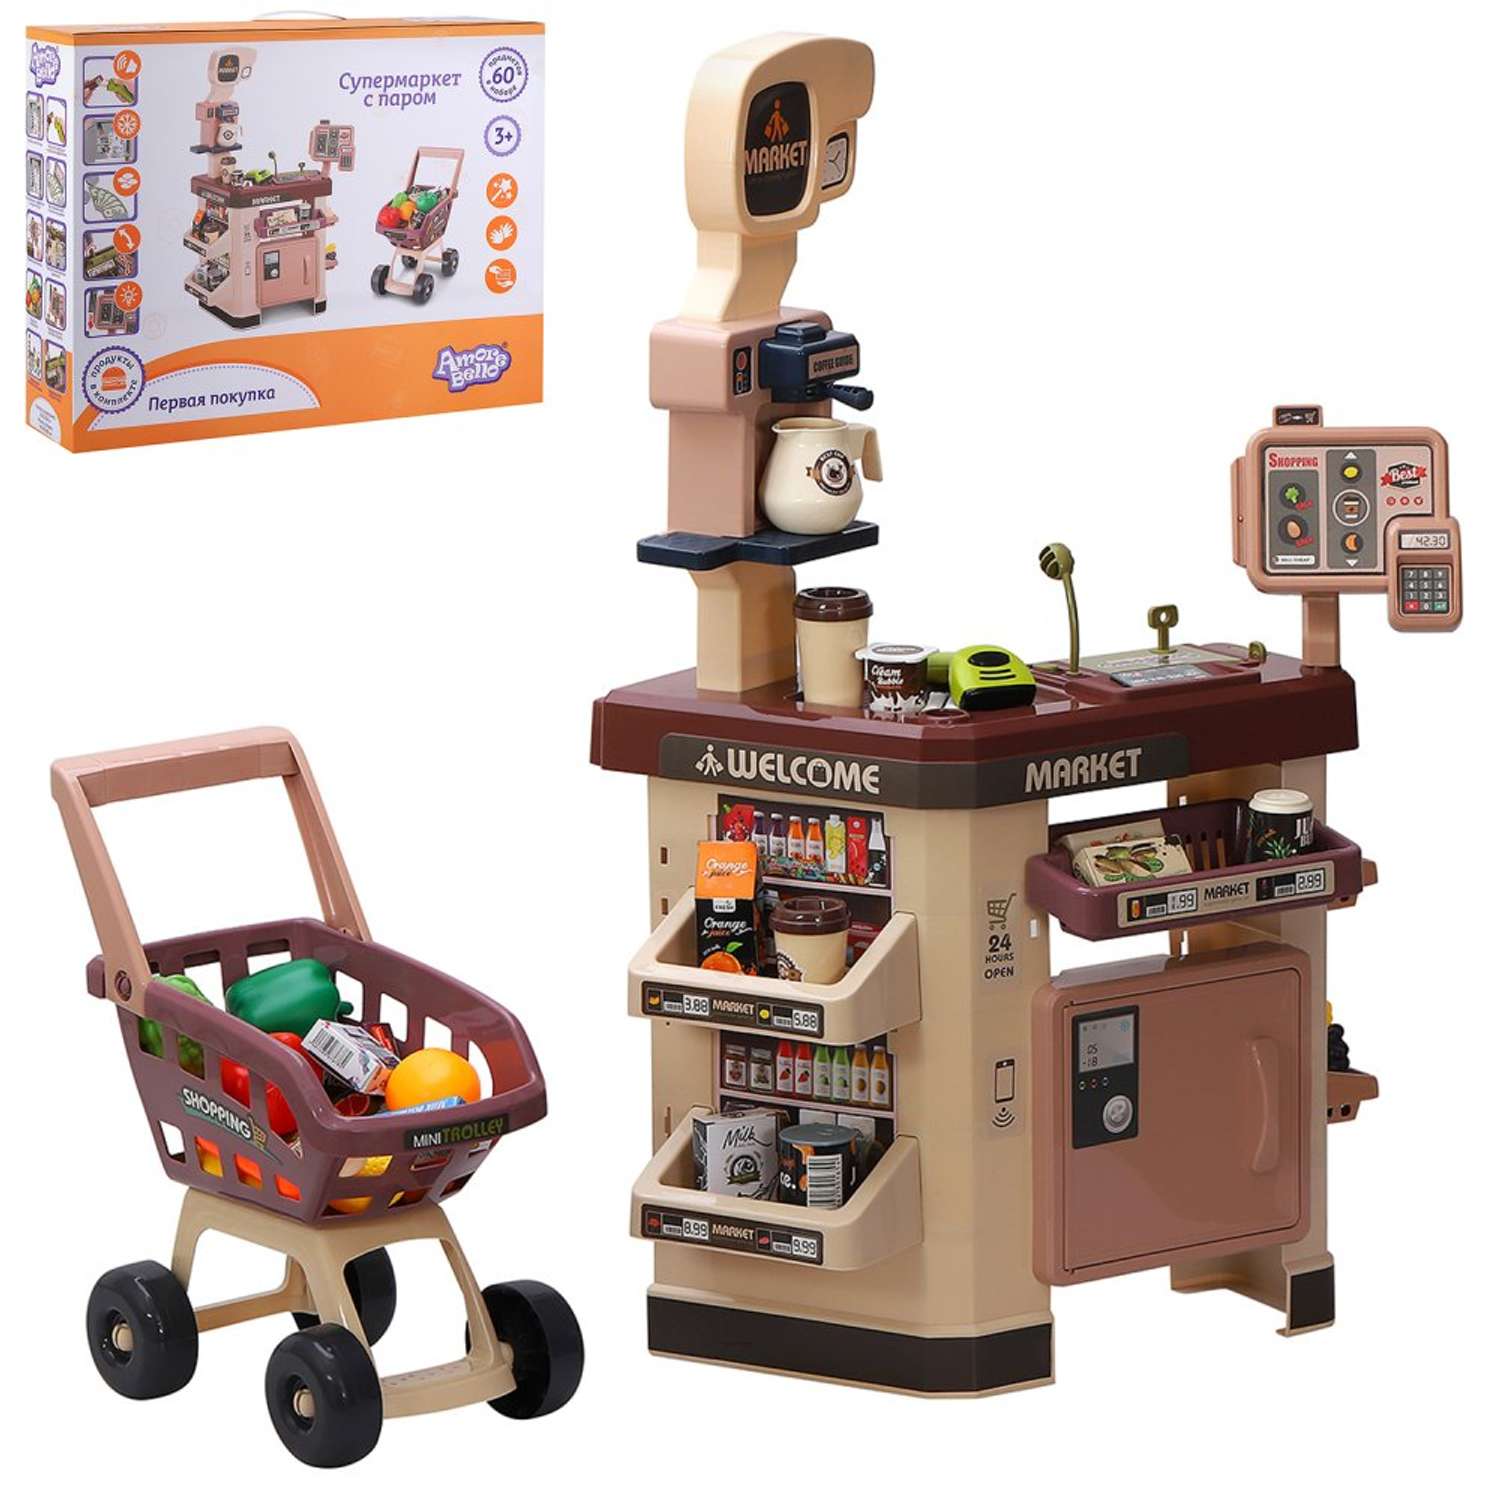 Игровой набор детский AMORE BELLO большой Супермаркет с прилавком тележкой и игрушечными продуктами 60 предметов JB0211057 - фото 8